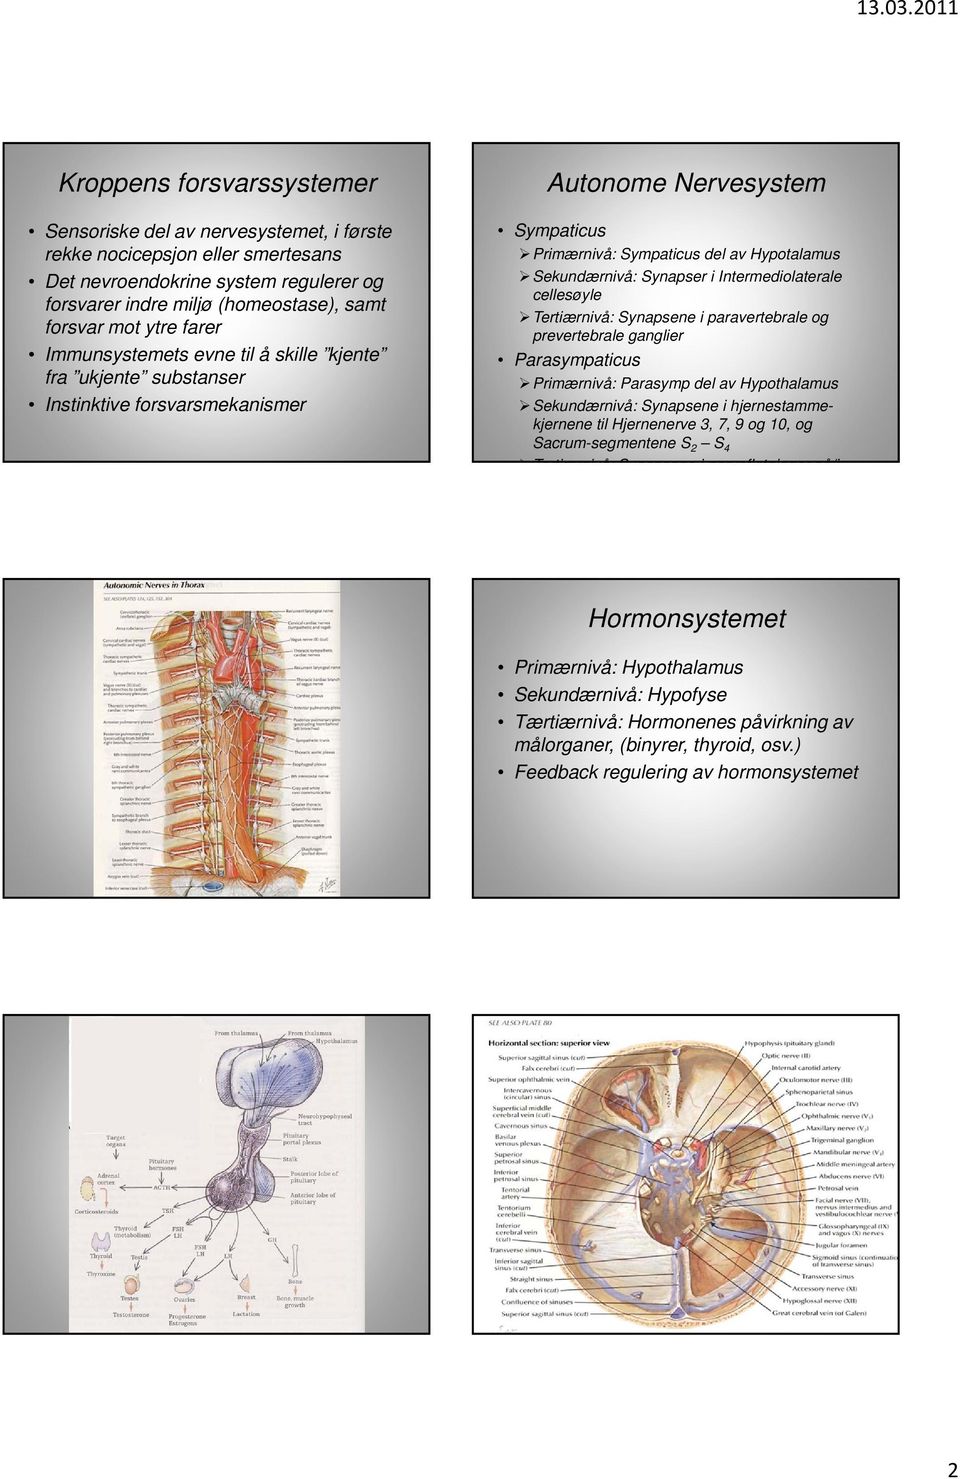 Intermediolaterale cellesøyle Tertiærnivå: Synapsene i paravertebrale og prevertebrale ganglier Parasympaticus Primærnivå: Parasymp del av Hypothalamus Sekundærnivå: Synapsene i hjernestammekjernene